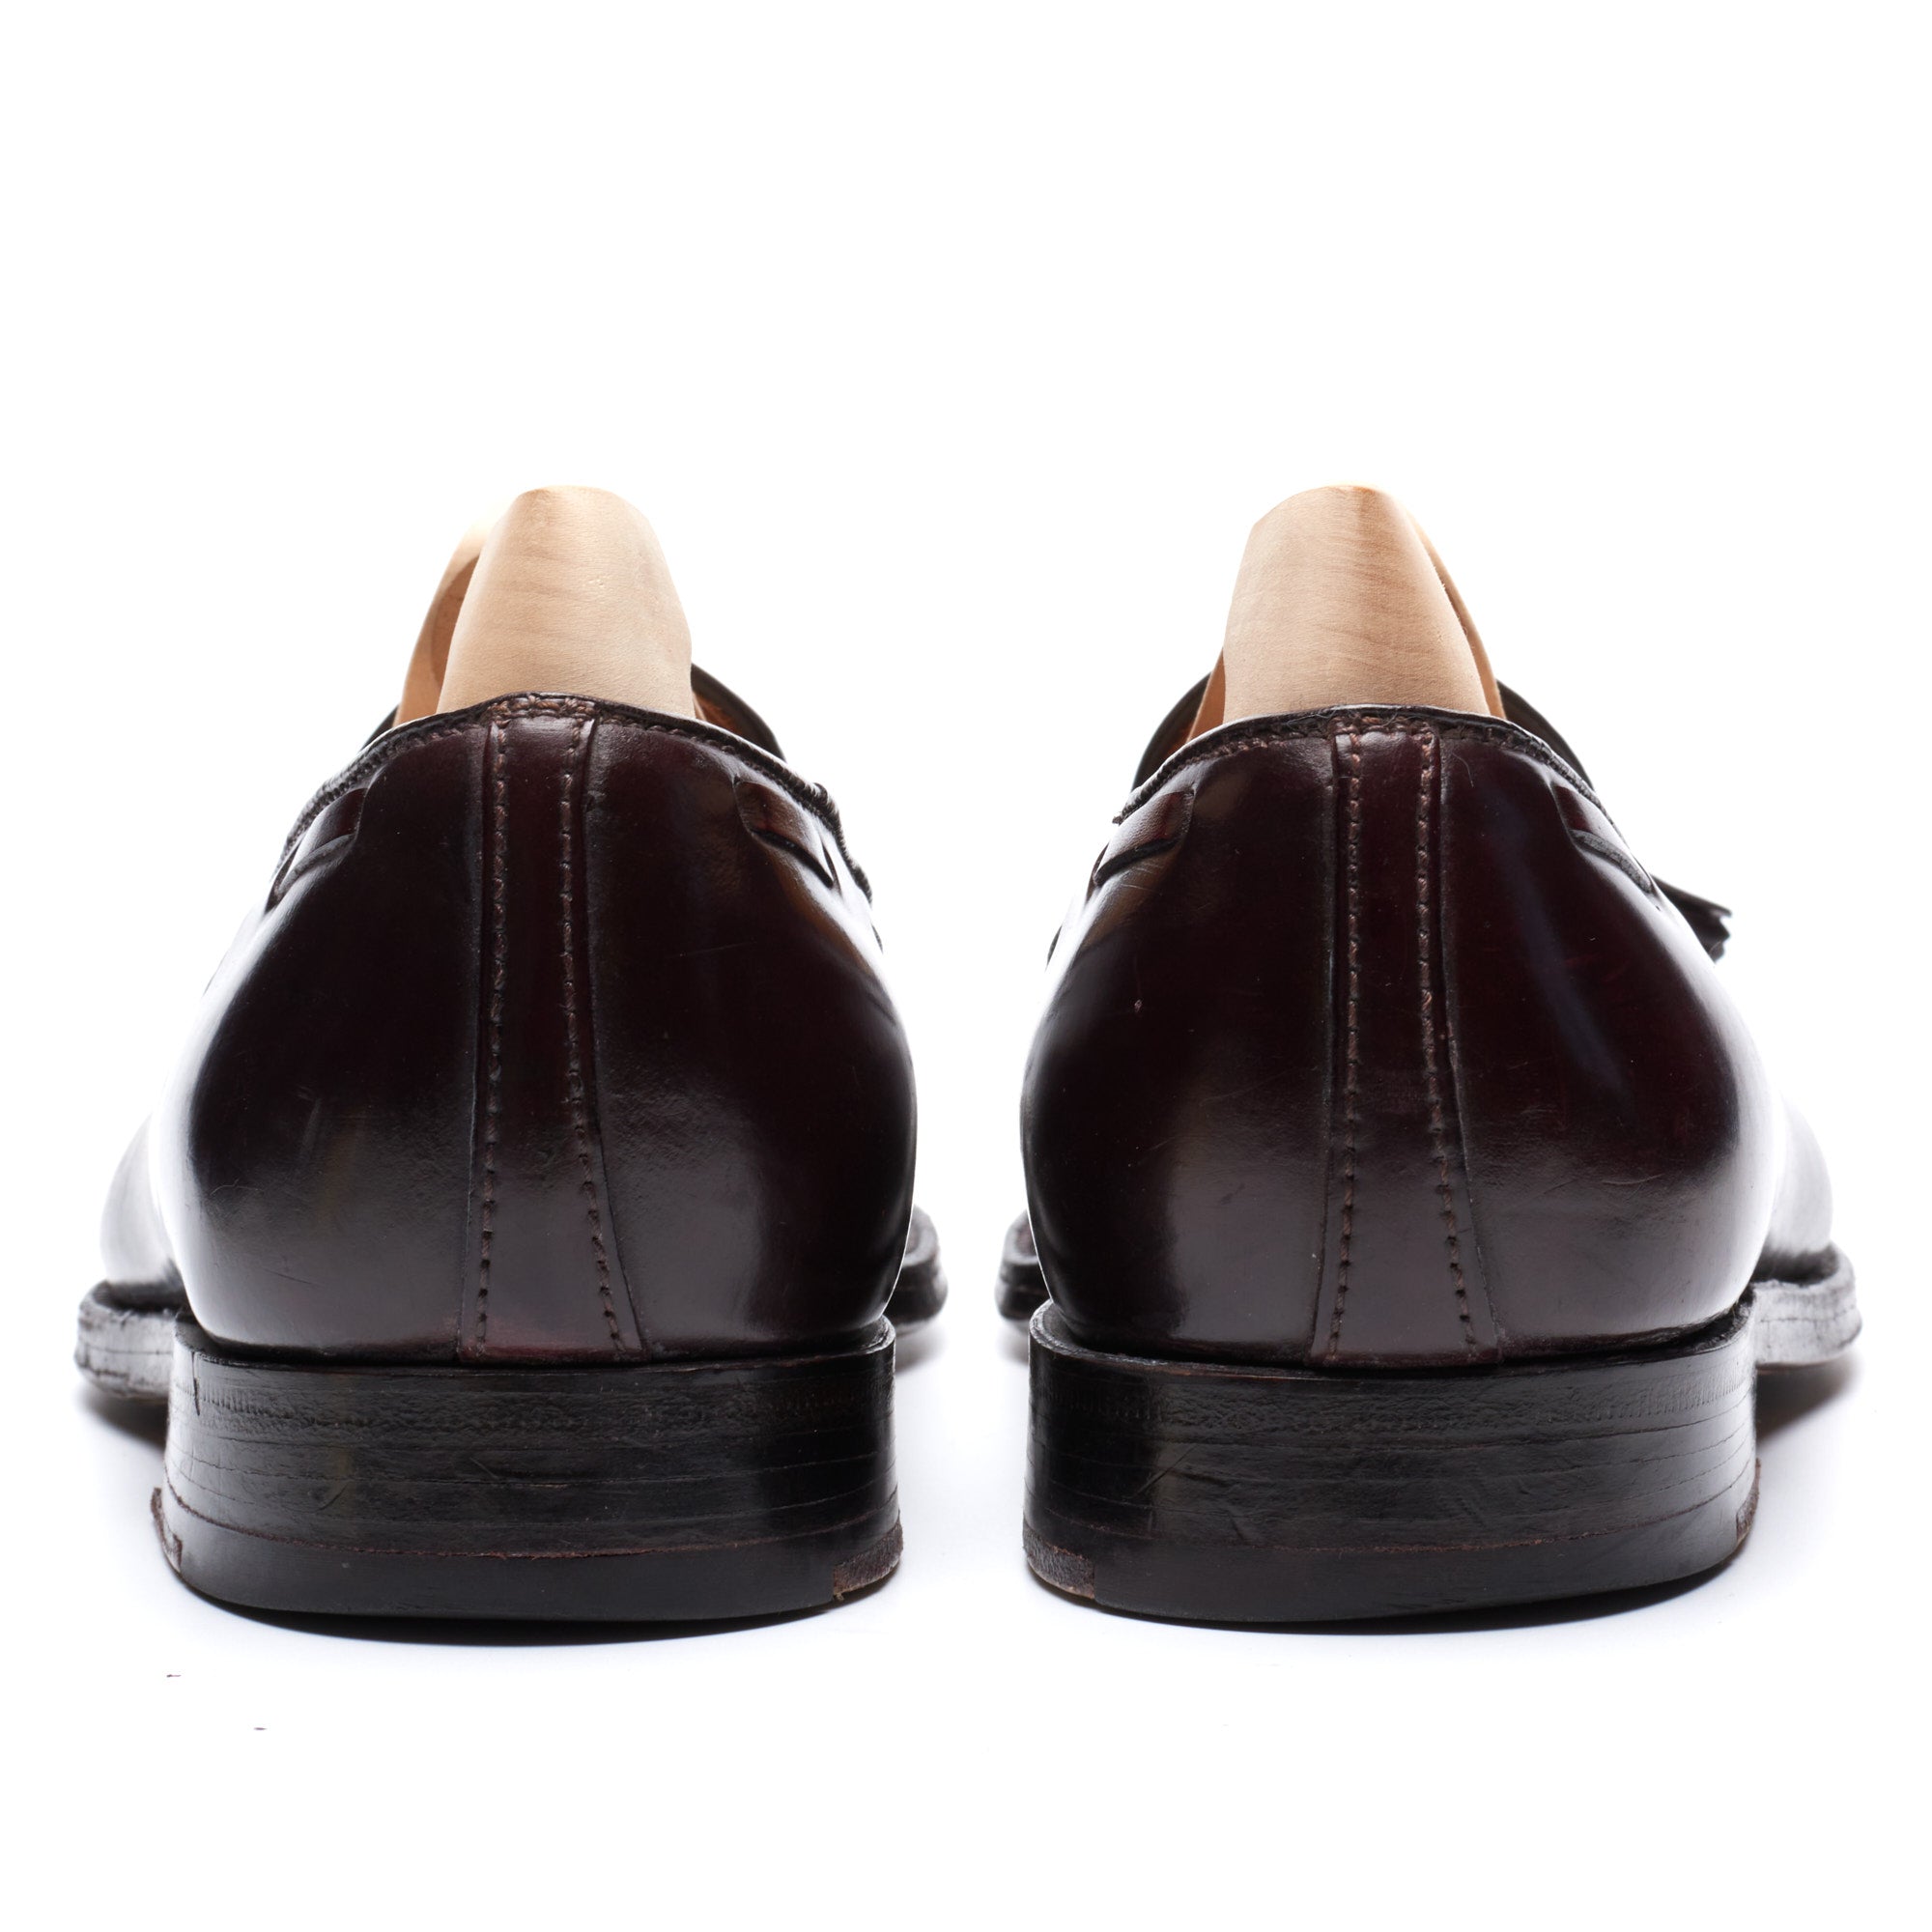 ALDEN 563 Burgundy #8 Horween Shell Cordovan Tassel Loafer Shoes US 8.5 B/D ALDEN